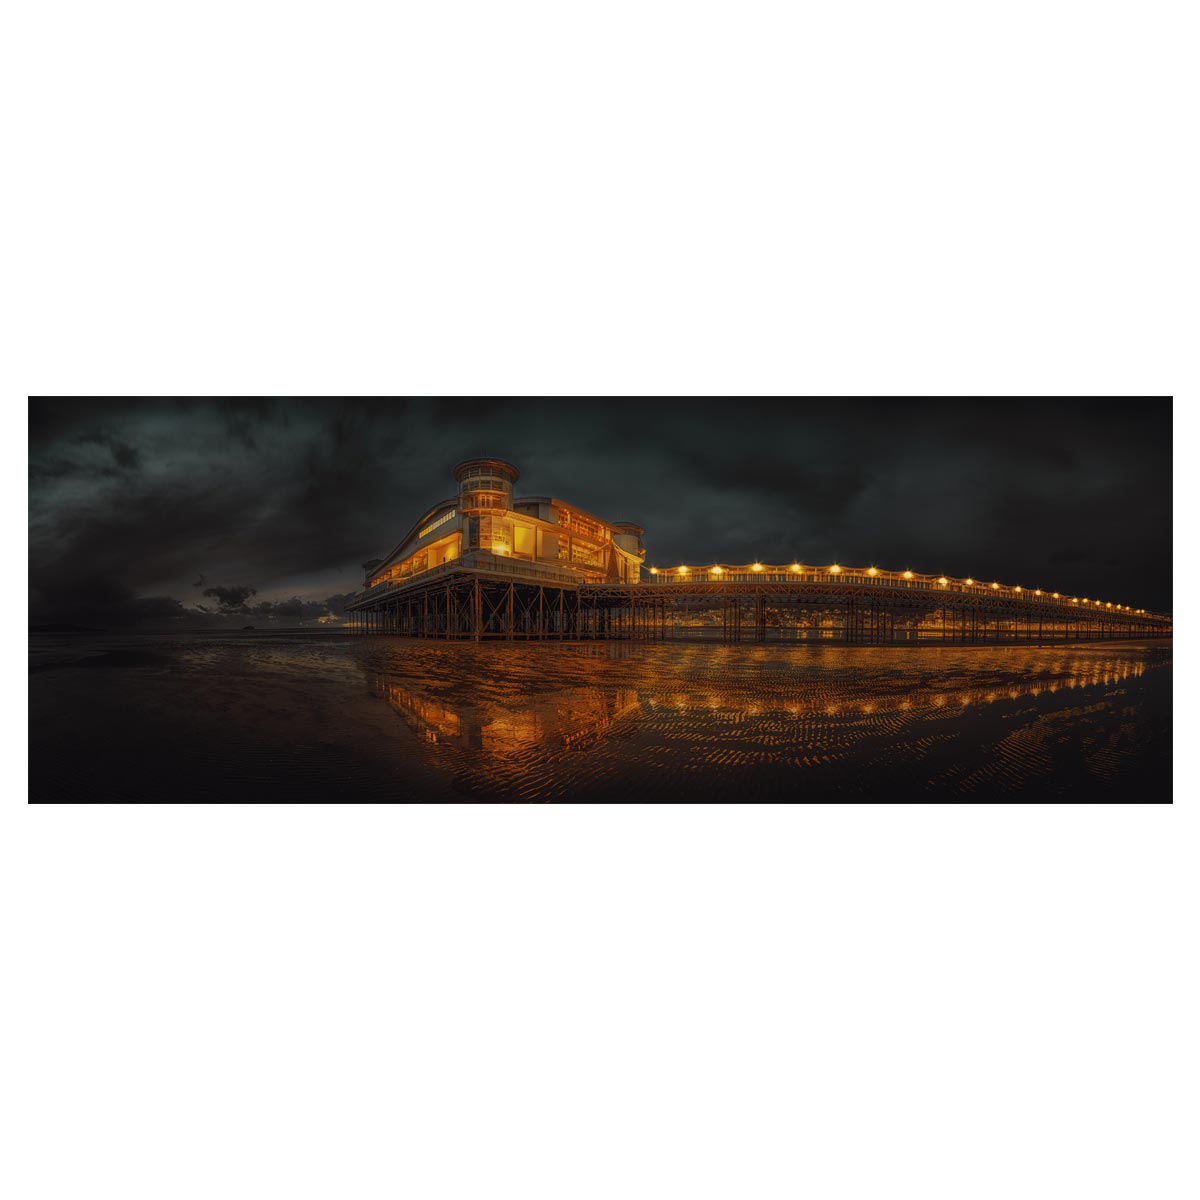 The Grand Pier, Weston-Super-Mare